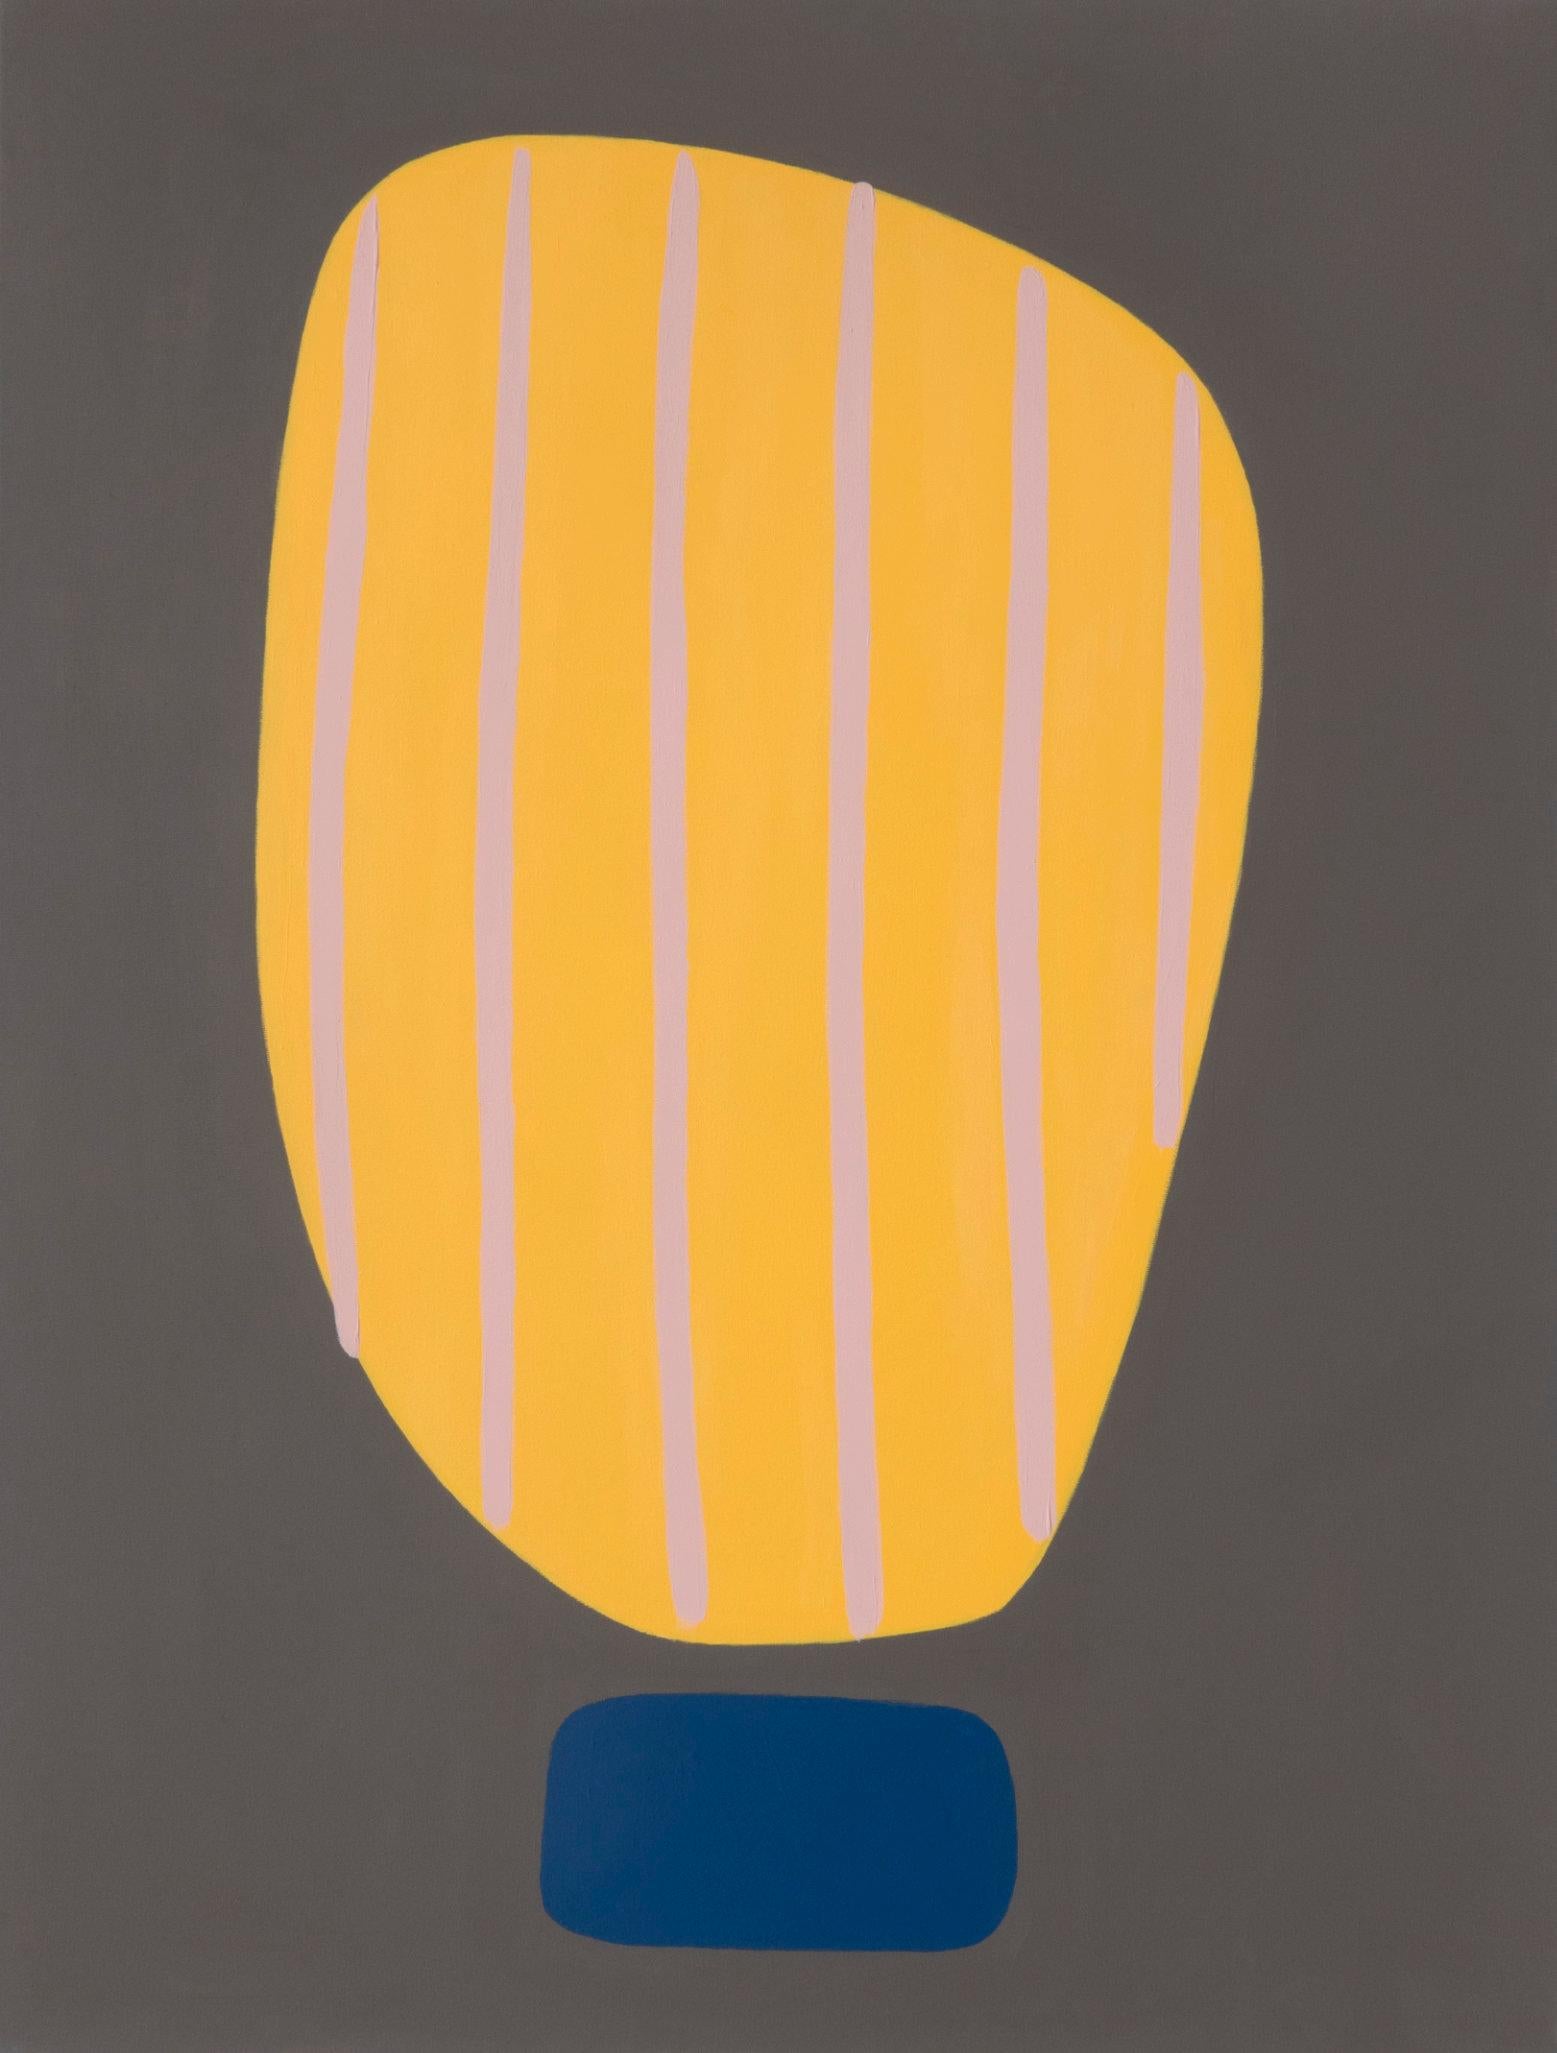 Abstract Painting Amanda Andersen - Peinture acrylique abstraite « Beaming IV », jaune foncé sur gris audacieux, courbes à rayures